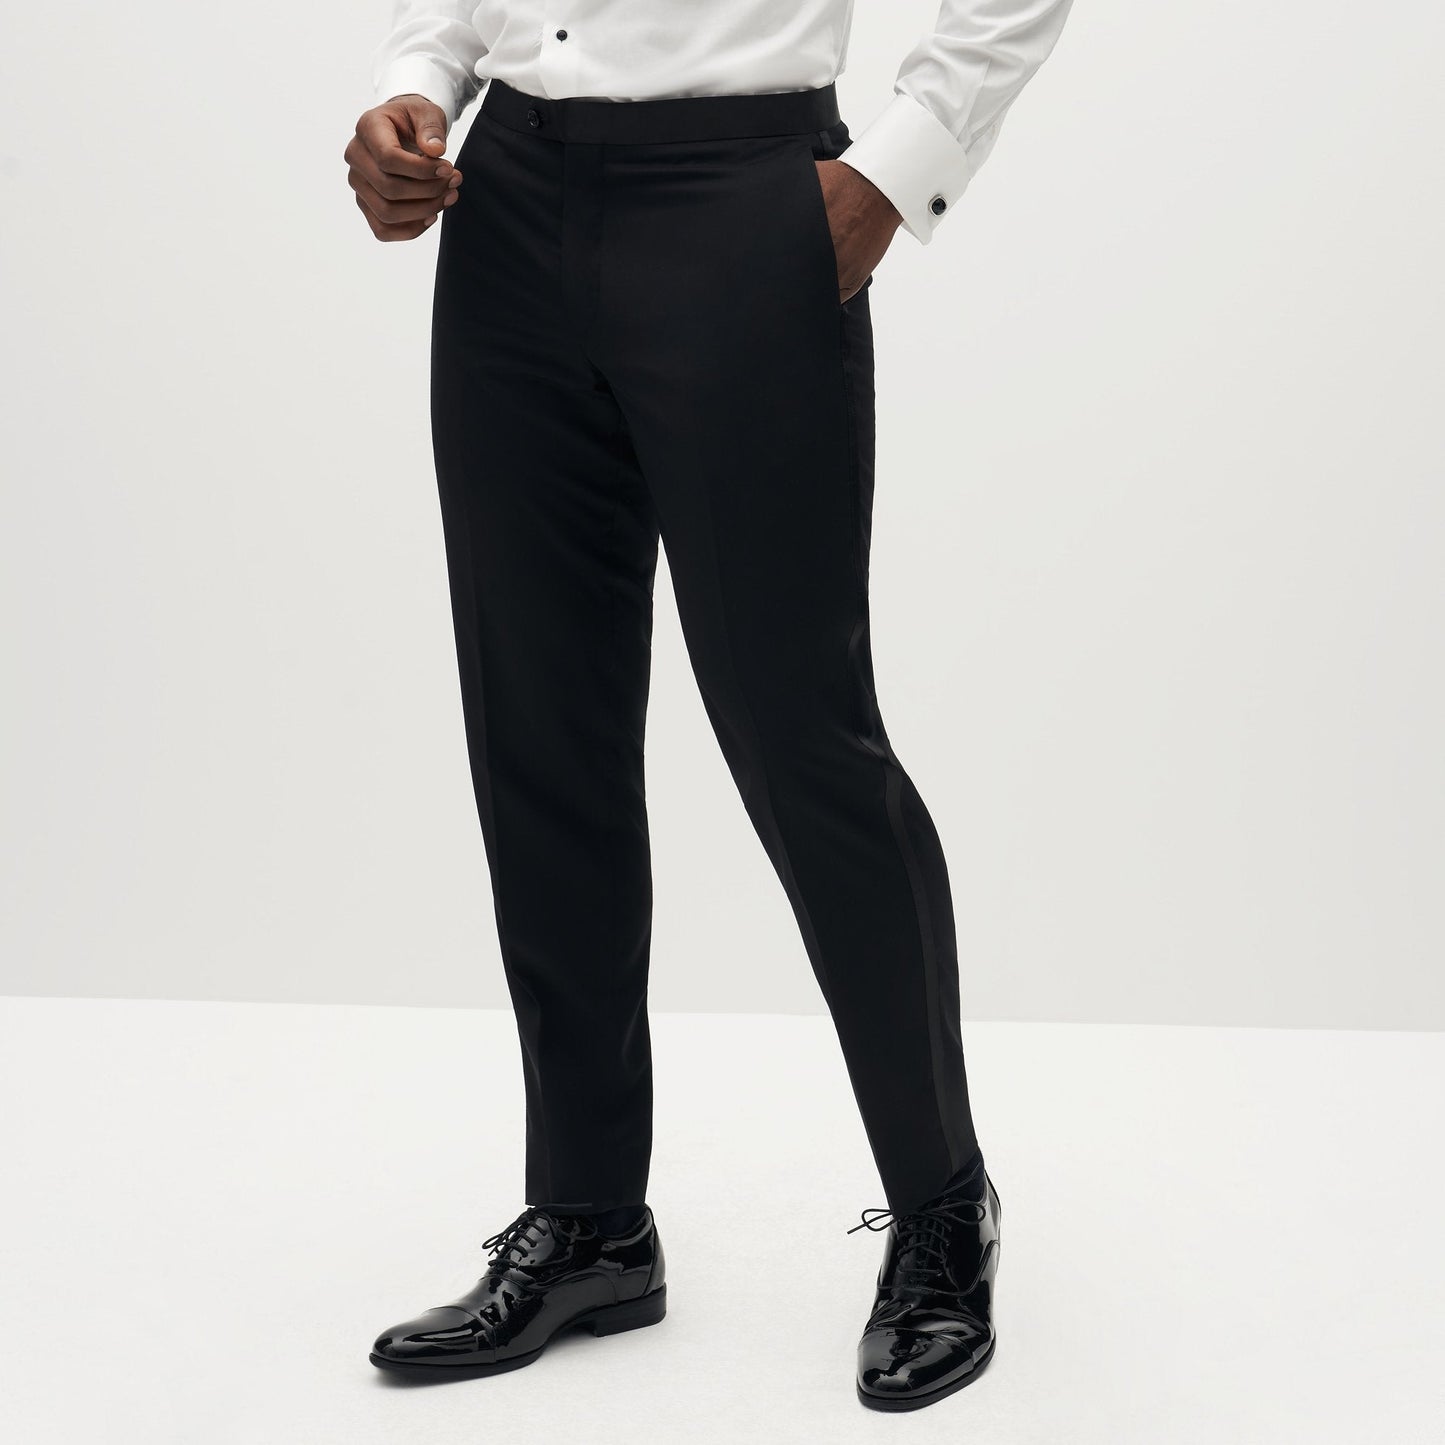 Classic Black Tuxedo Pants by SuitShop